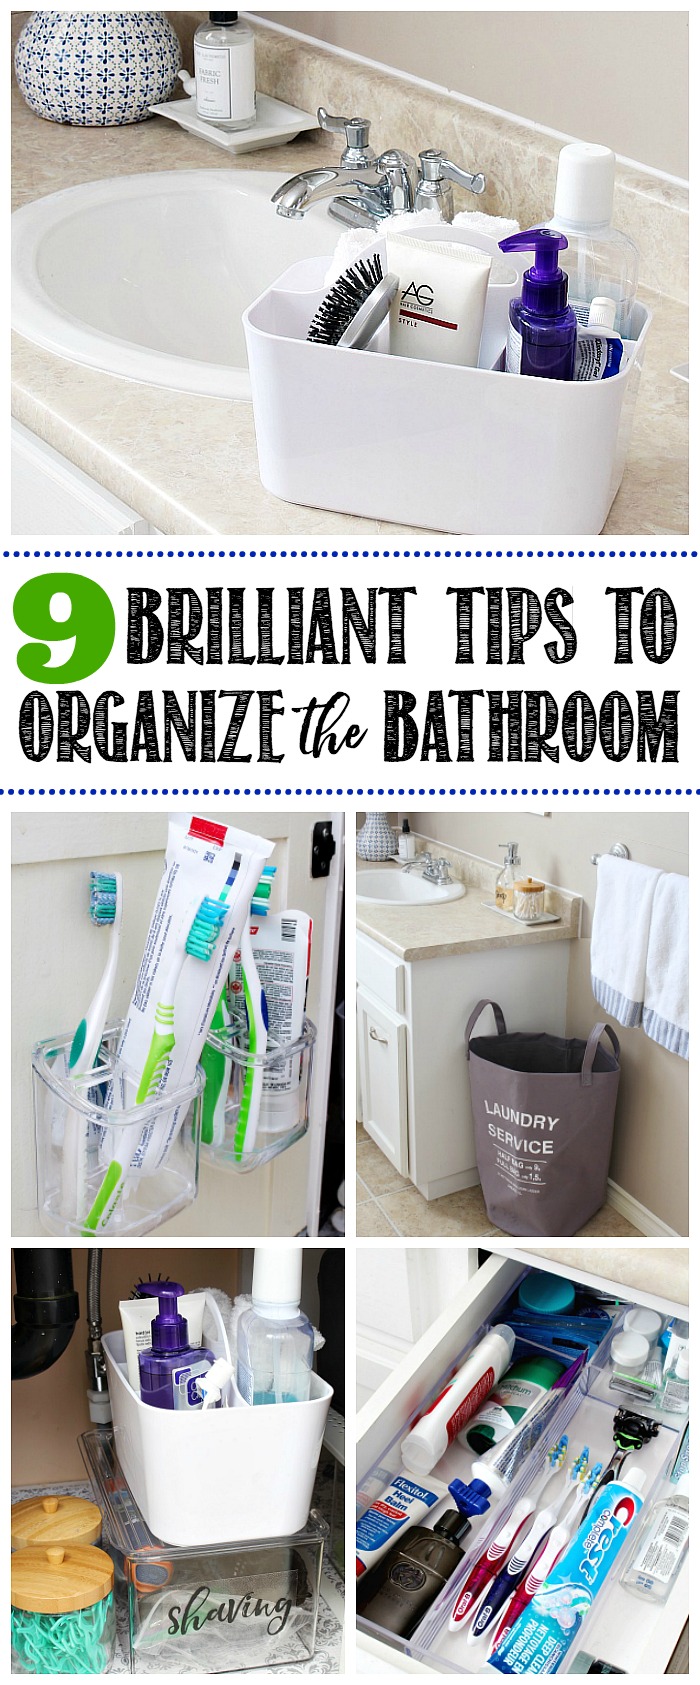 Organized bathroom ideas.